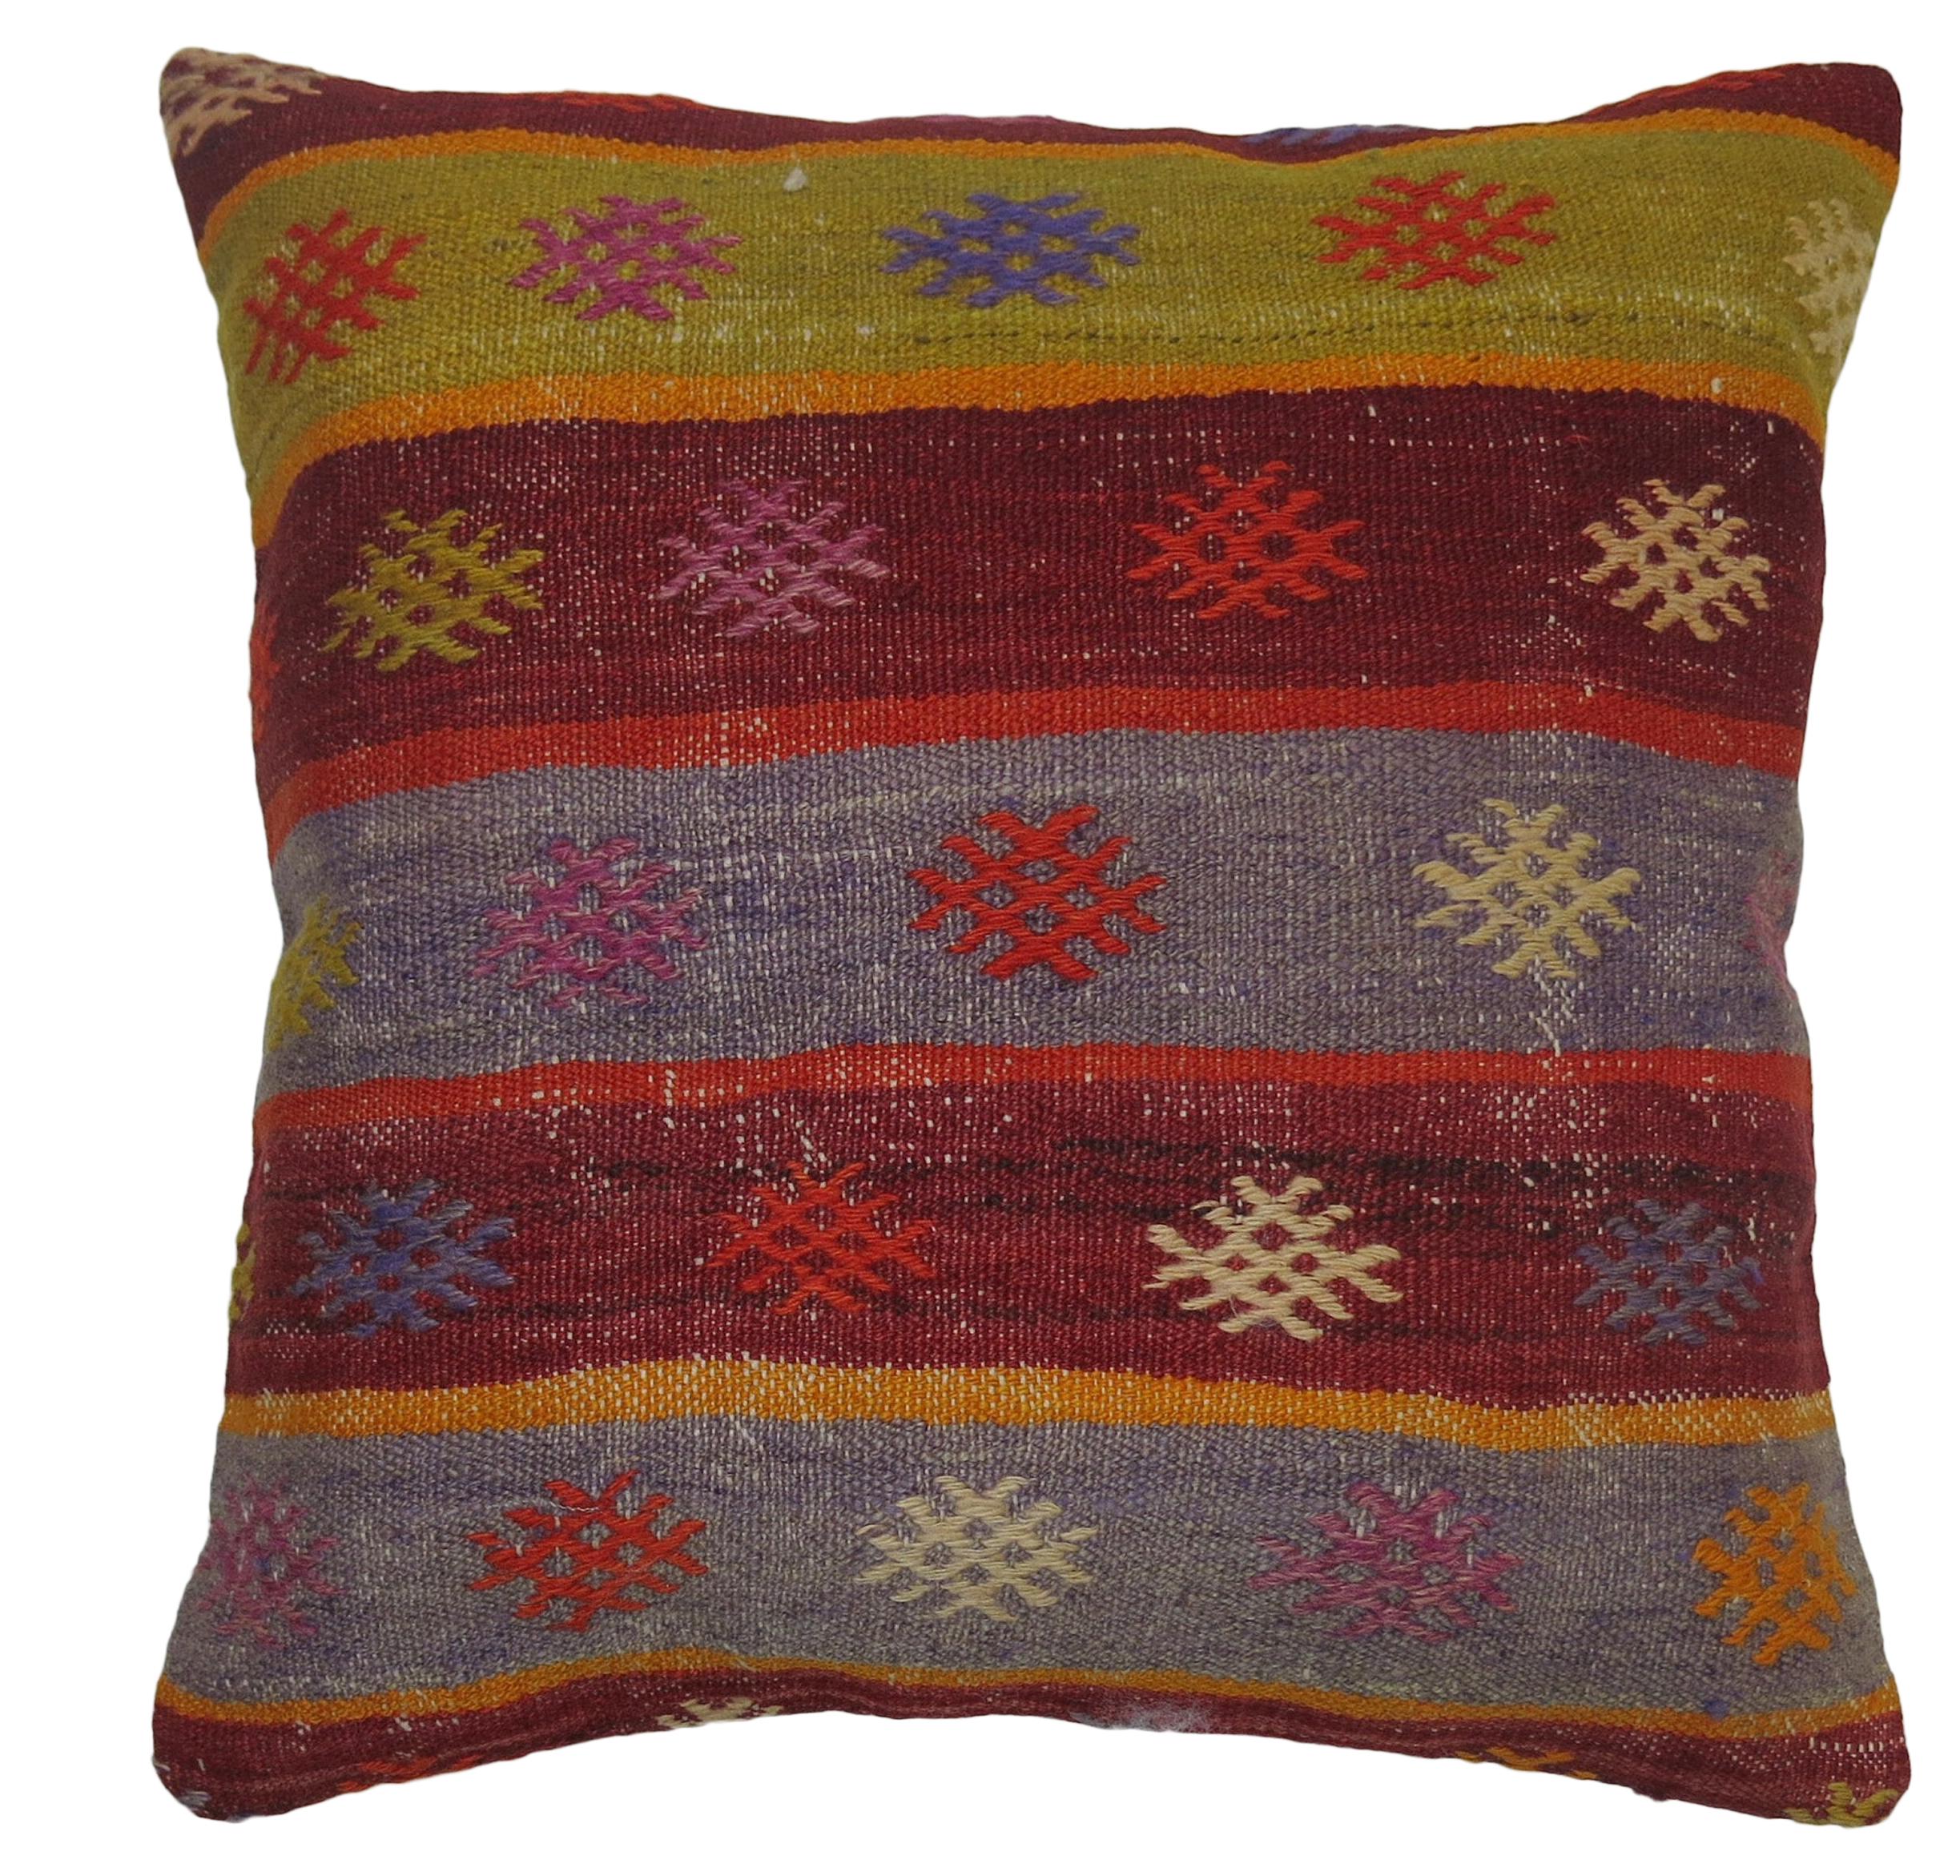 Colorful Vintage Kilim Pillow